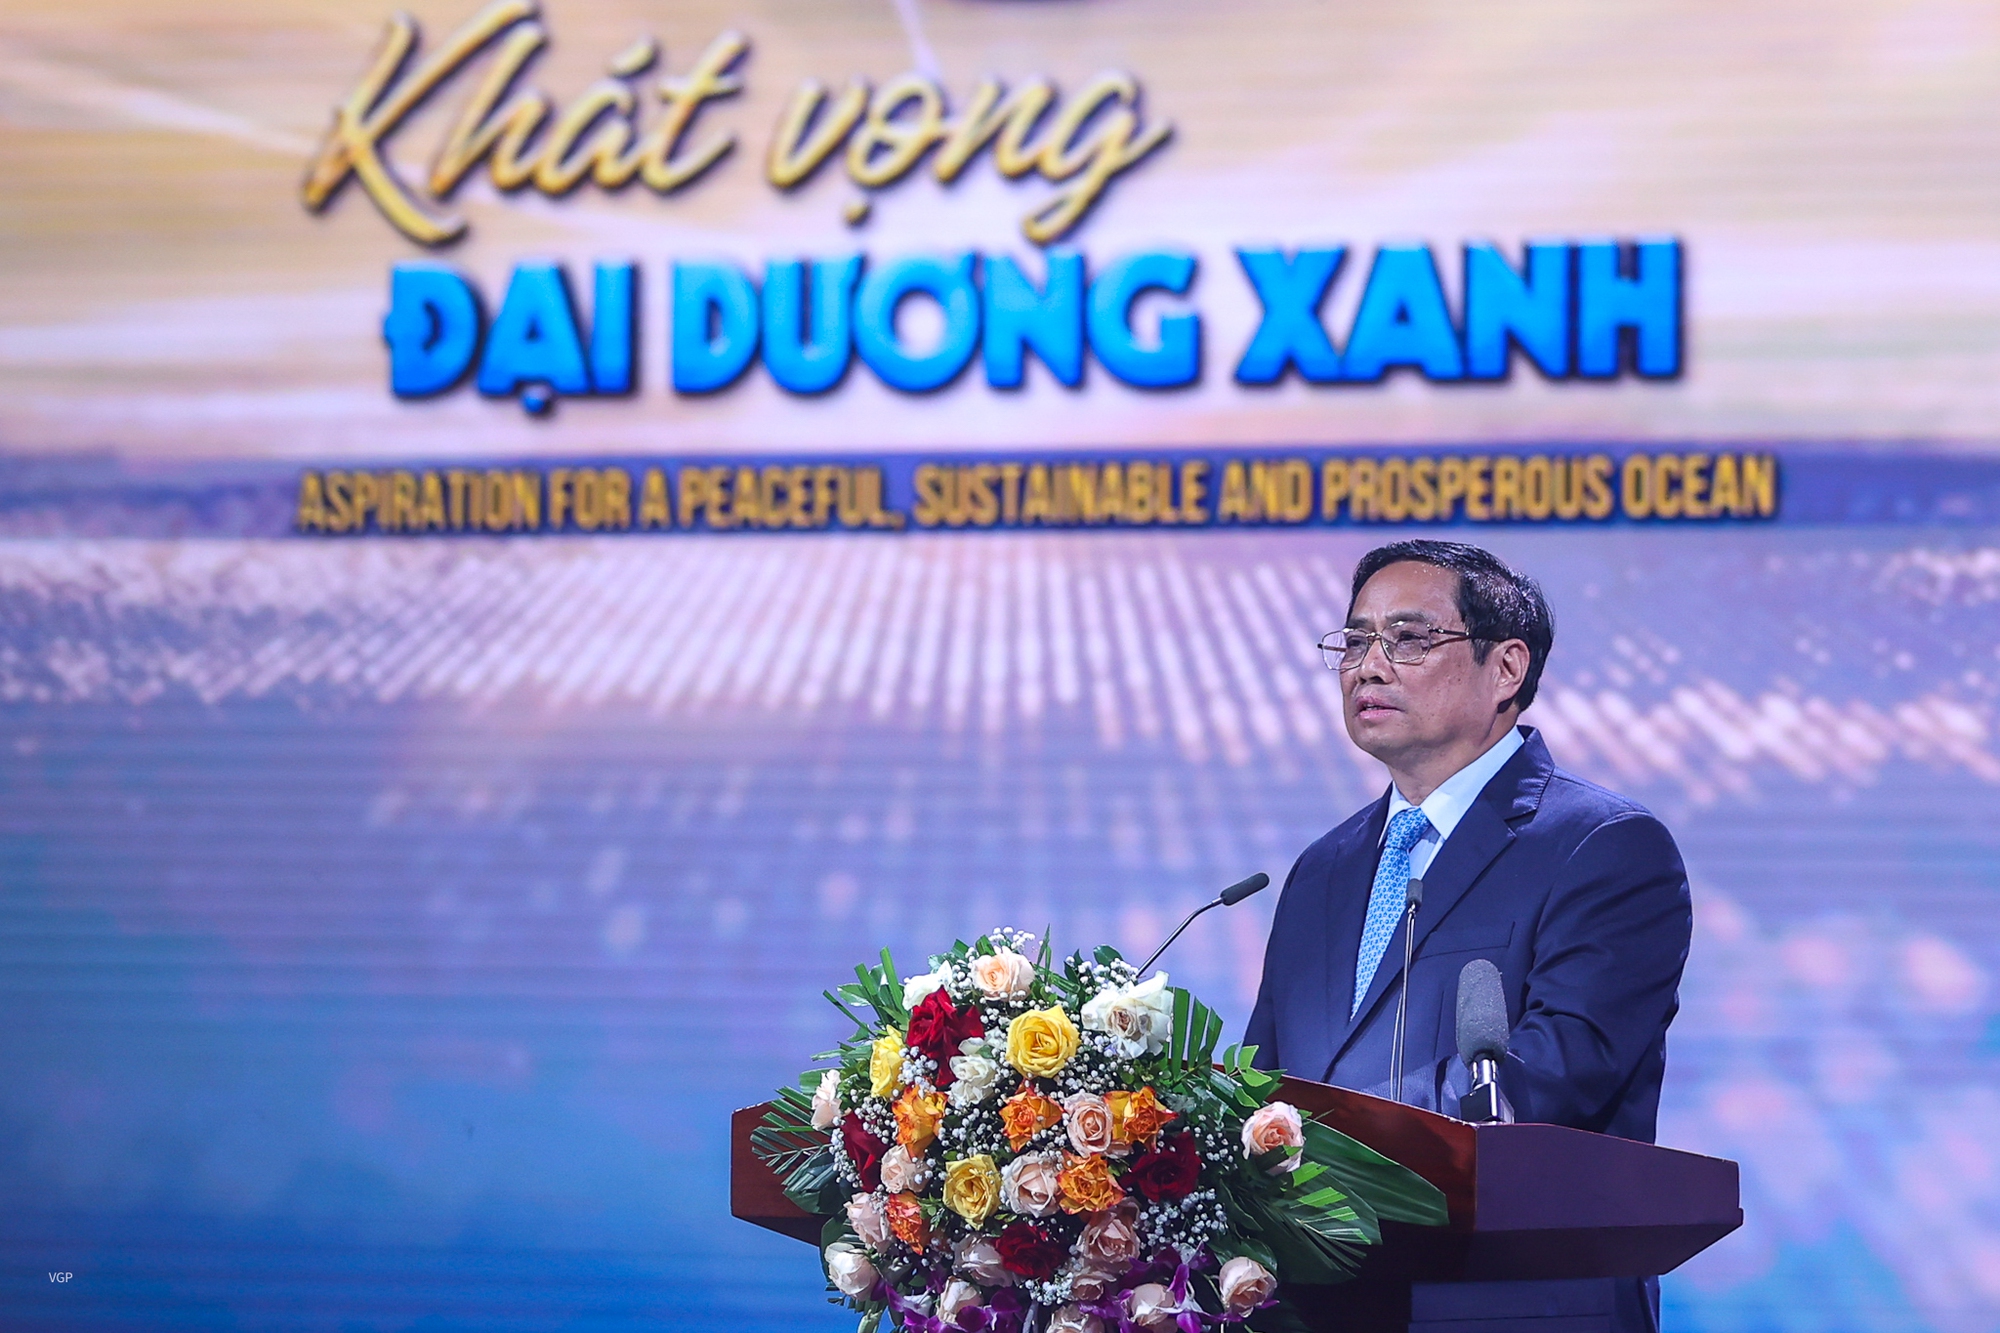 Việt Nam chung tay cùng cộng đồng quốc tế vì đại dương xanh hòa bình và phát triển bền vững - Ảnh 1.